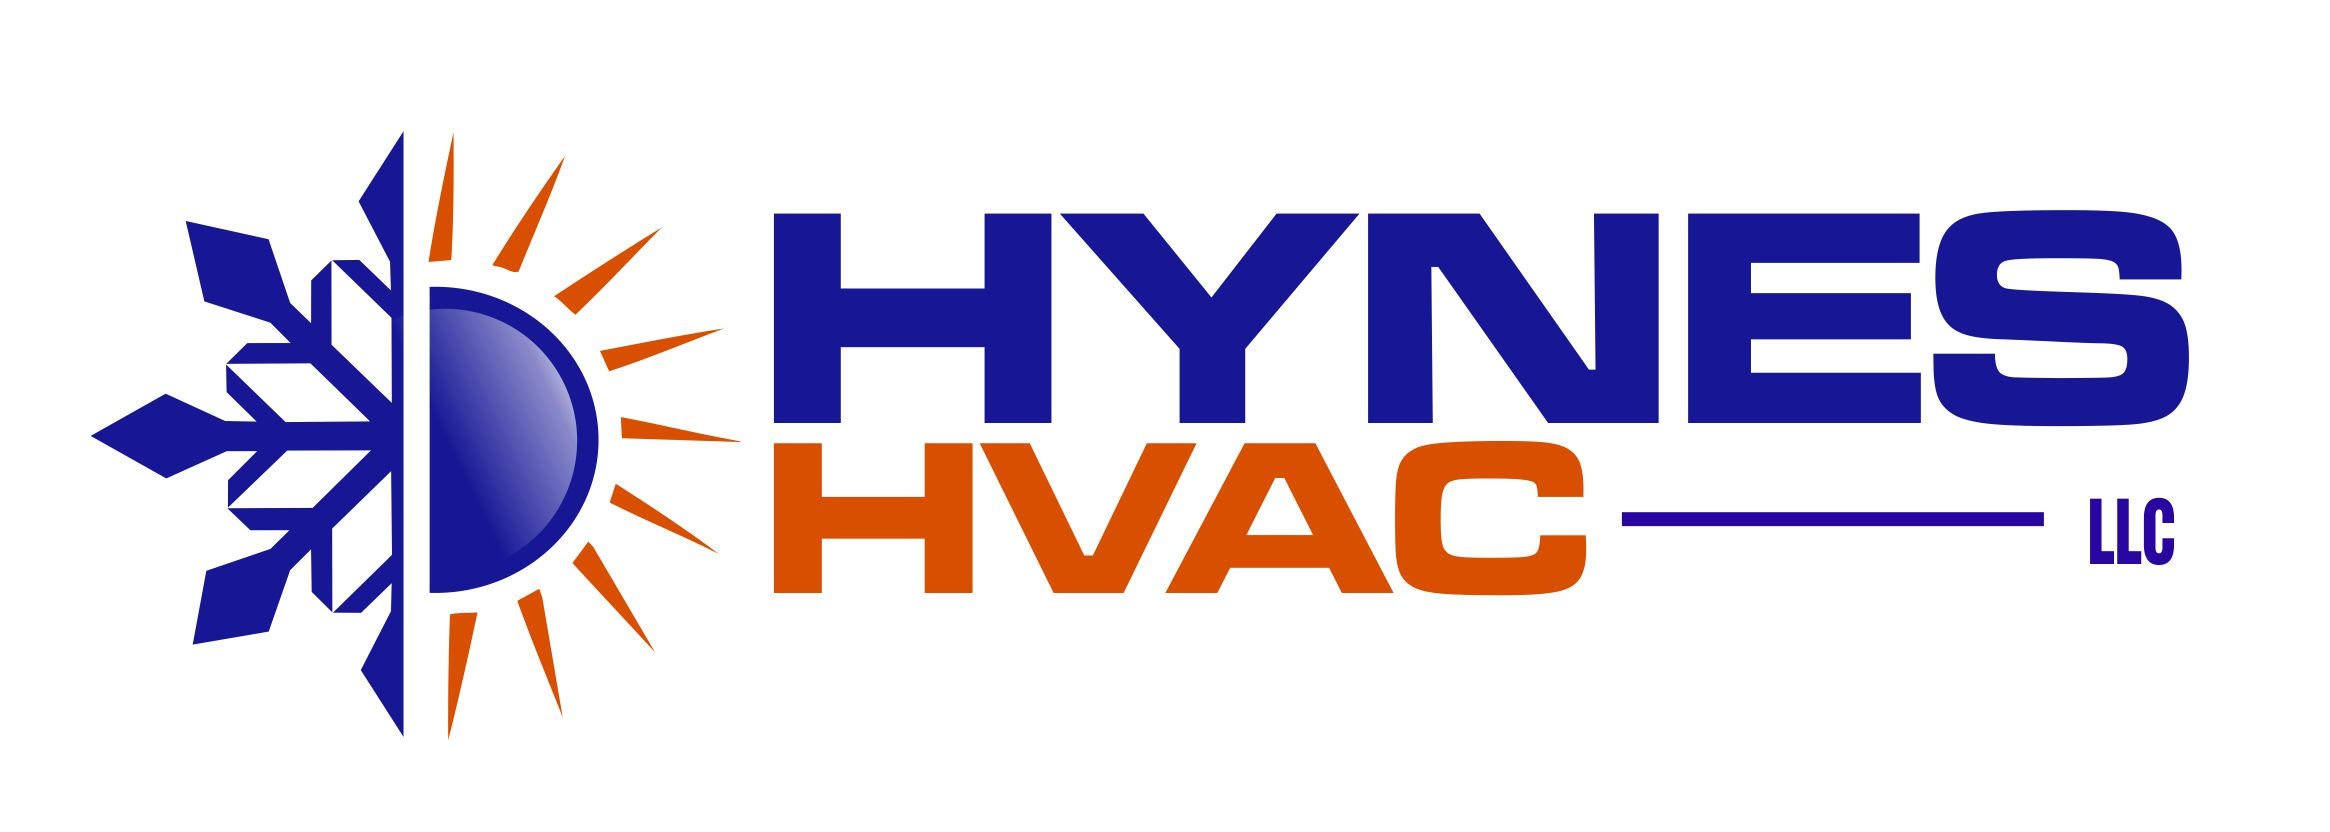 Owner of Hynes HVAC LLC                                 https://t.co/RtaqjoHGj9